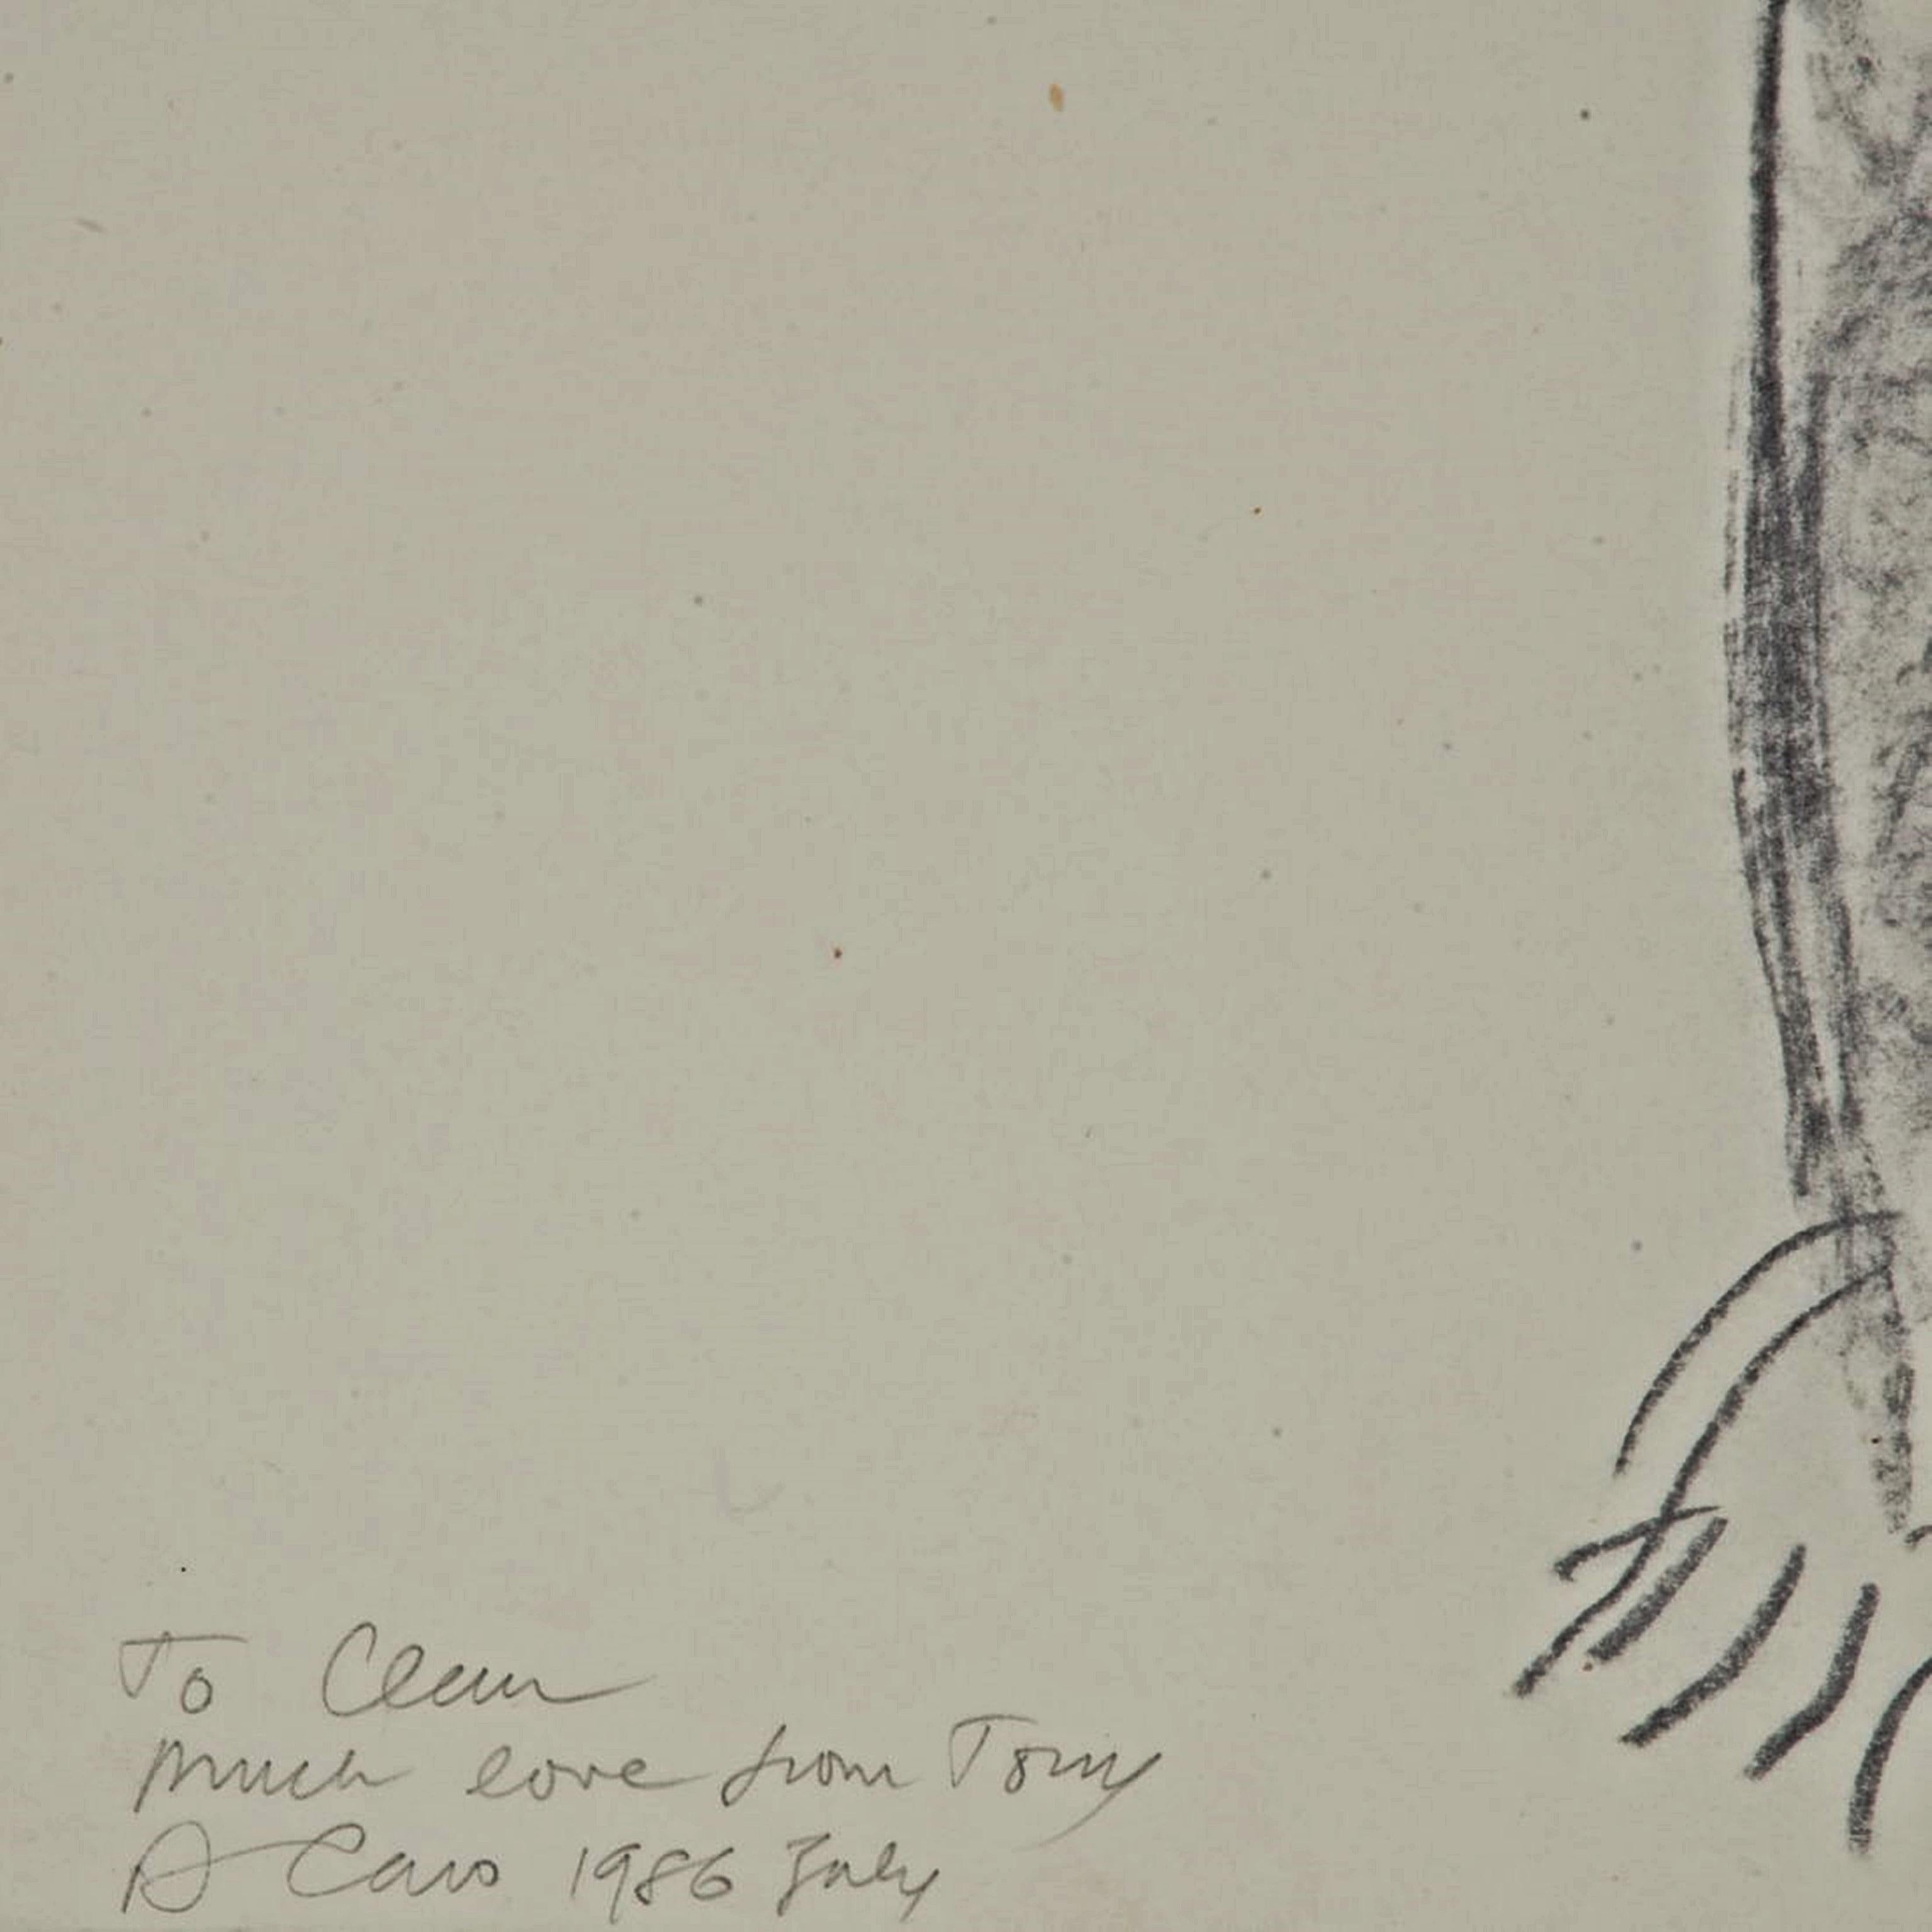 Anthony Caro
Akt (signiert, gewidmet und bezeichnet für Clement Greenberg), 1986
Zeichenkohle auf Papier
Handsigniert vom Künstler. Die Zeichnung ist beschriftet 